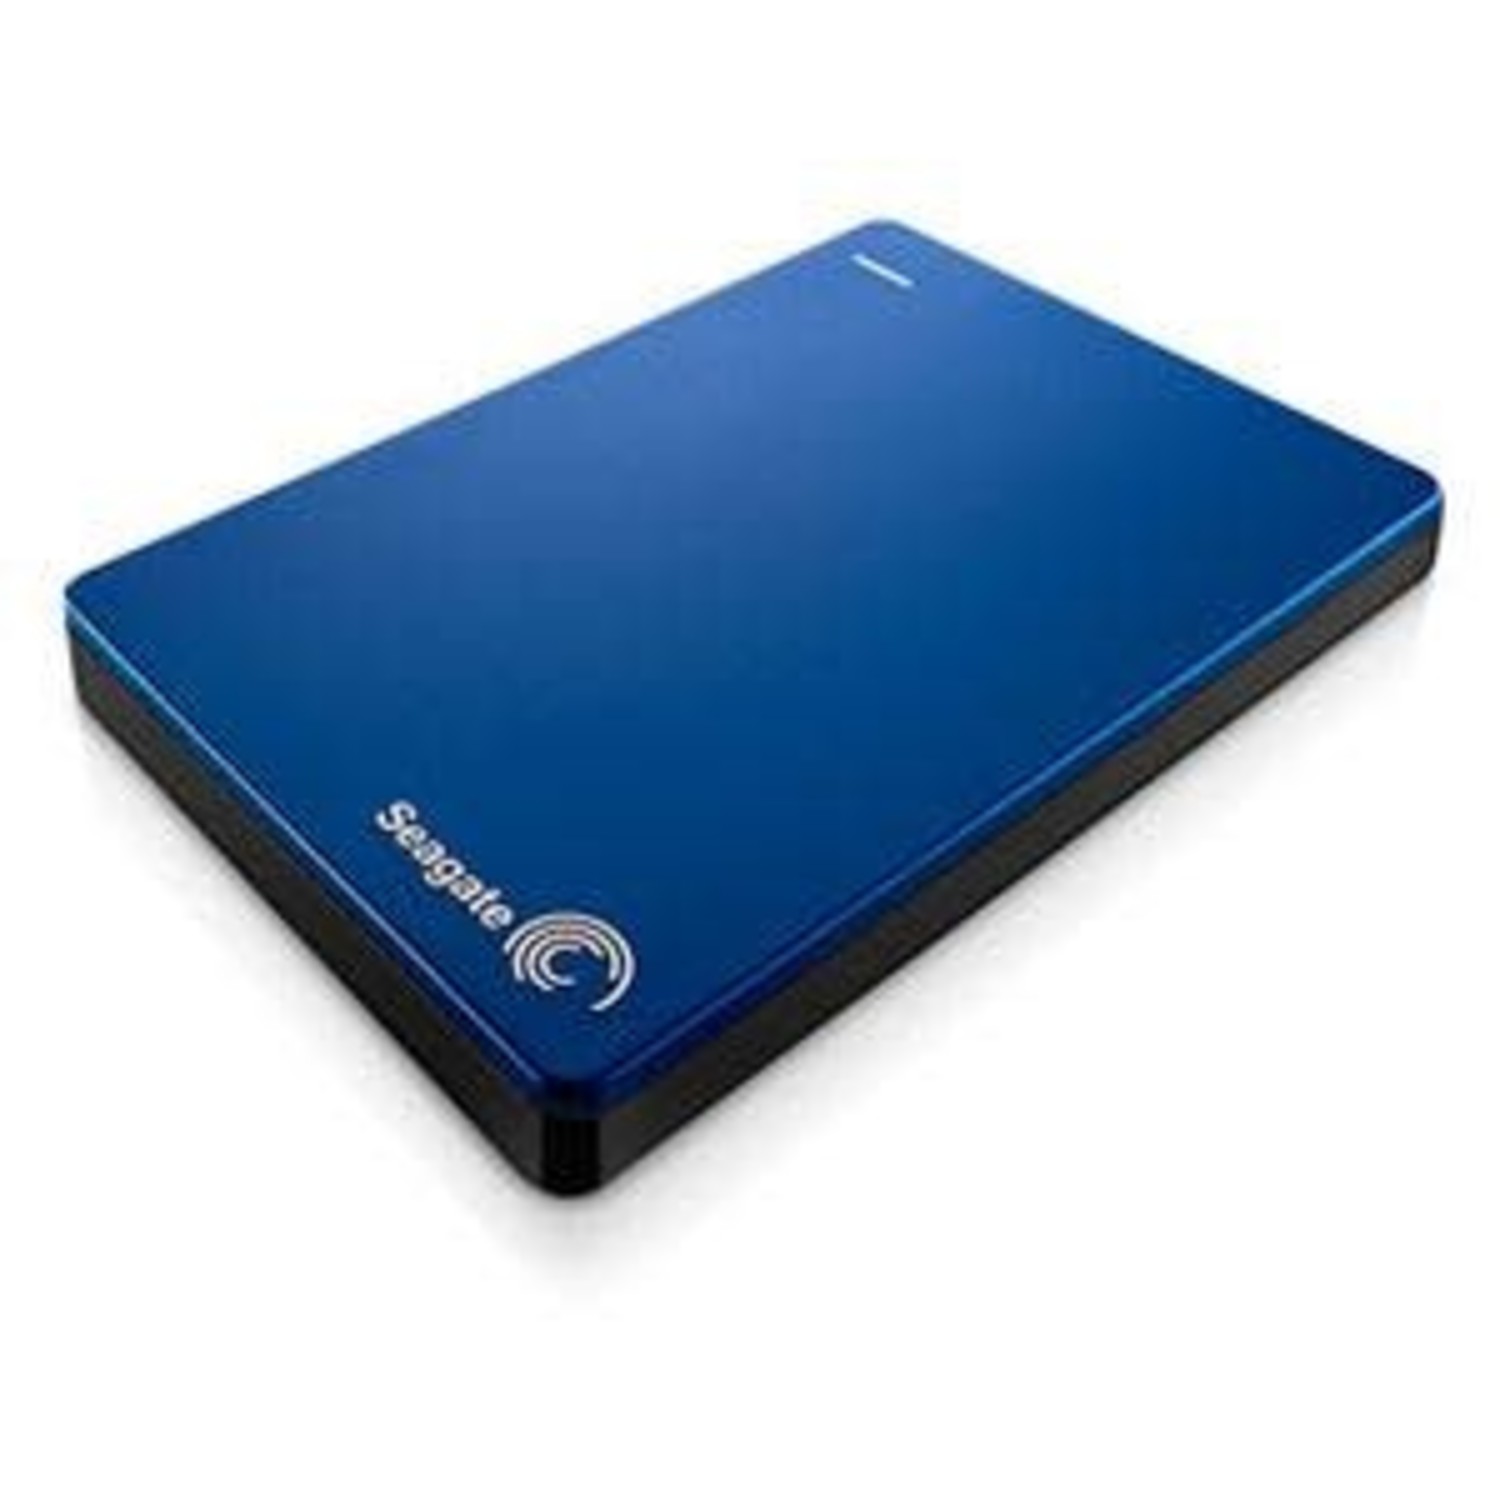 Жесткий диск backup. Seagate Backup Plus Portable Drive 1tb. Внешний жесткий диск 2 ТБ Seagate. Внешний жесткий диск Seagate USB 3.0 1 ТБ stdr1000202 Backup Plus 2.5", синий. Внешний жесткий диск Сеагате 1 ТБ.